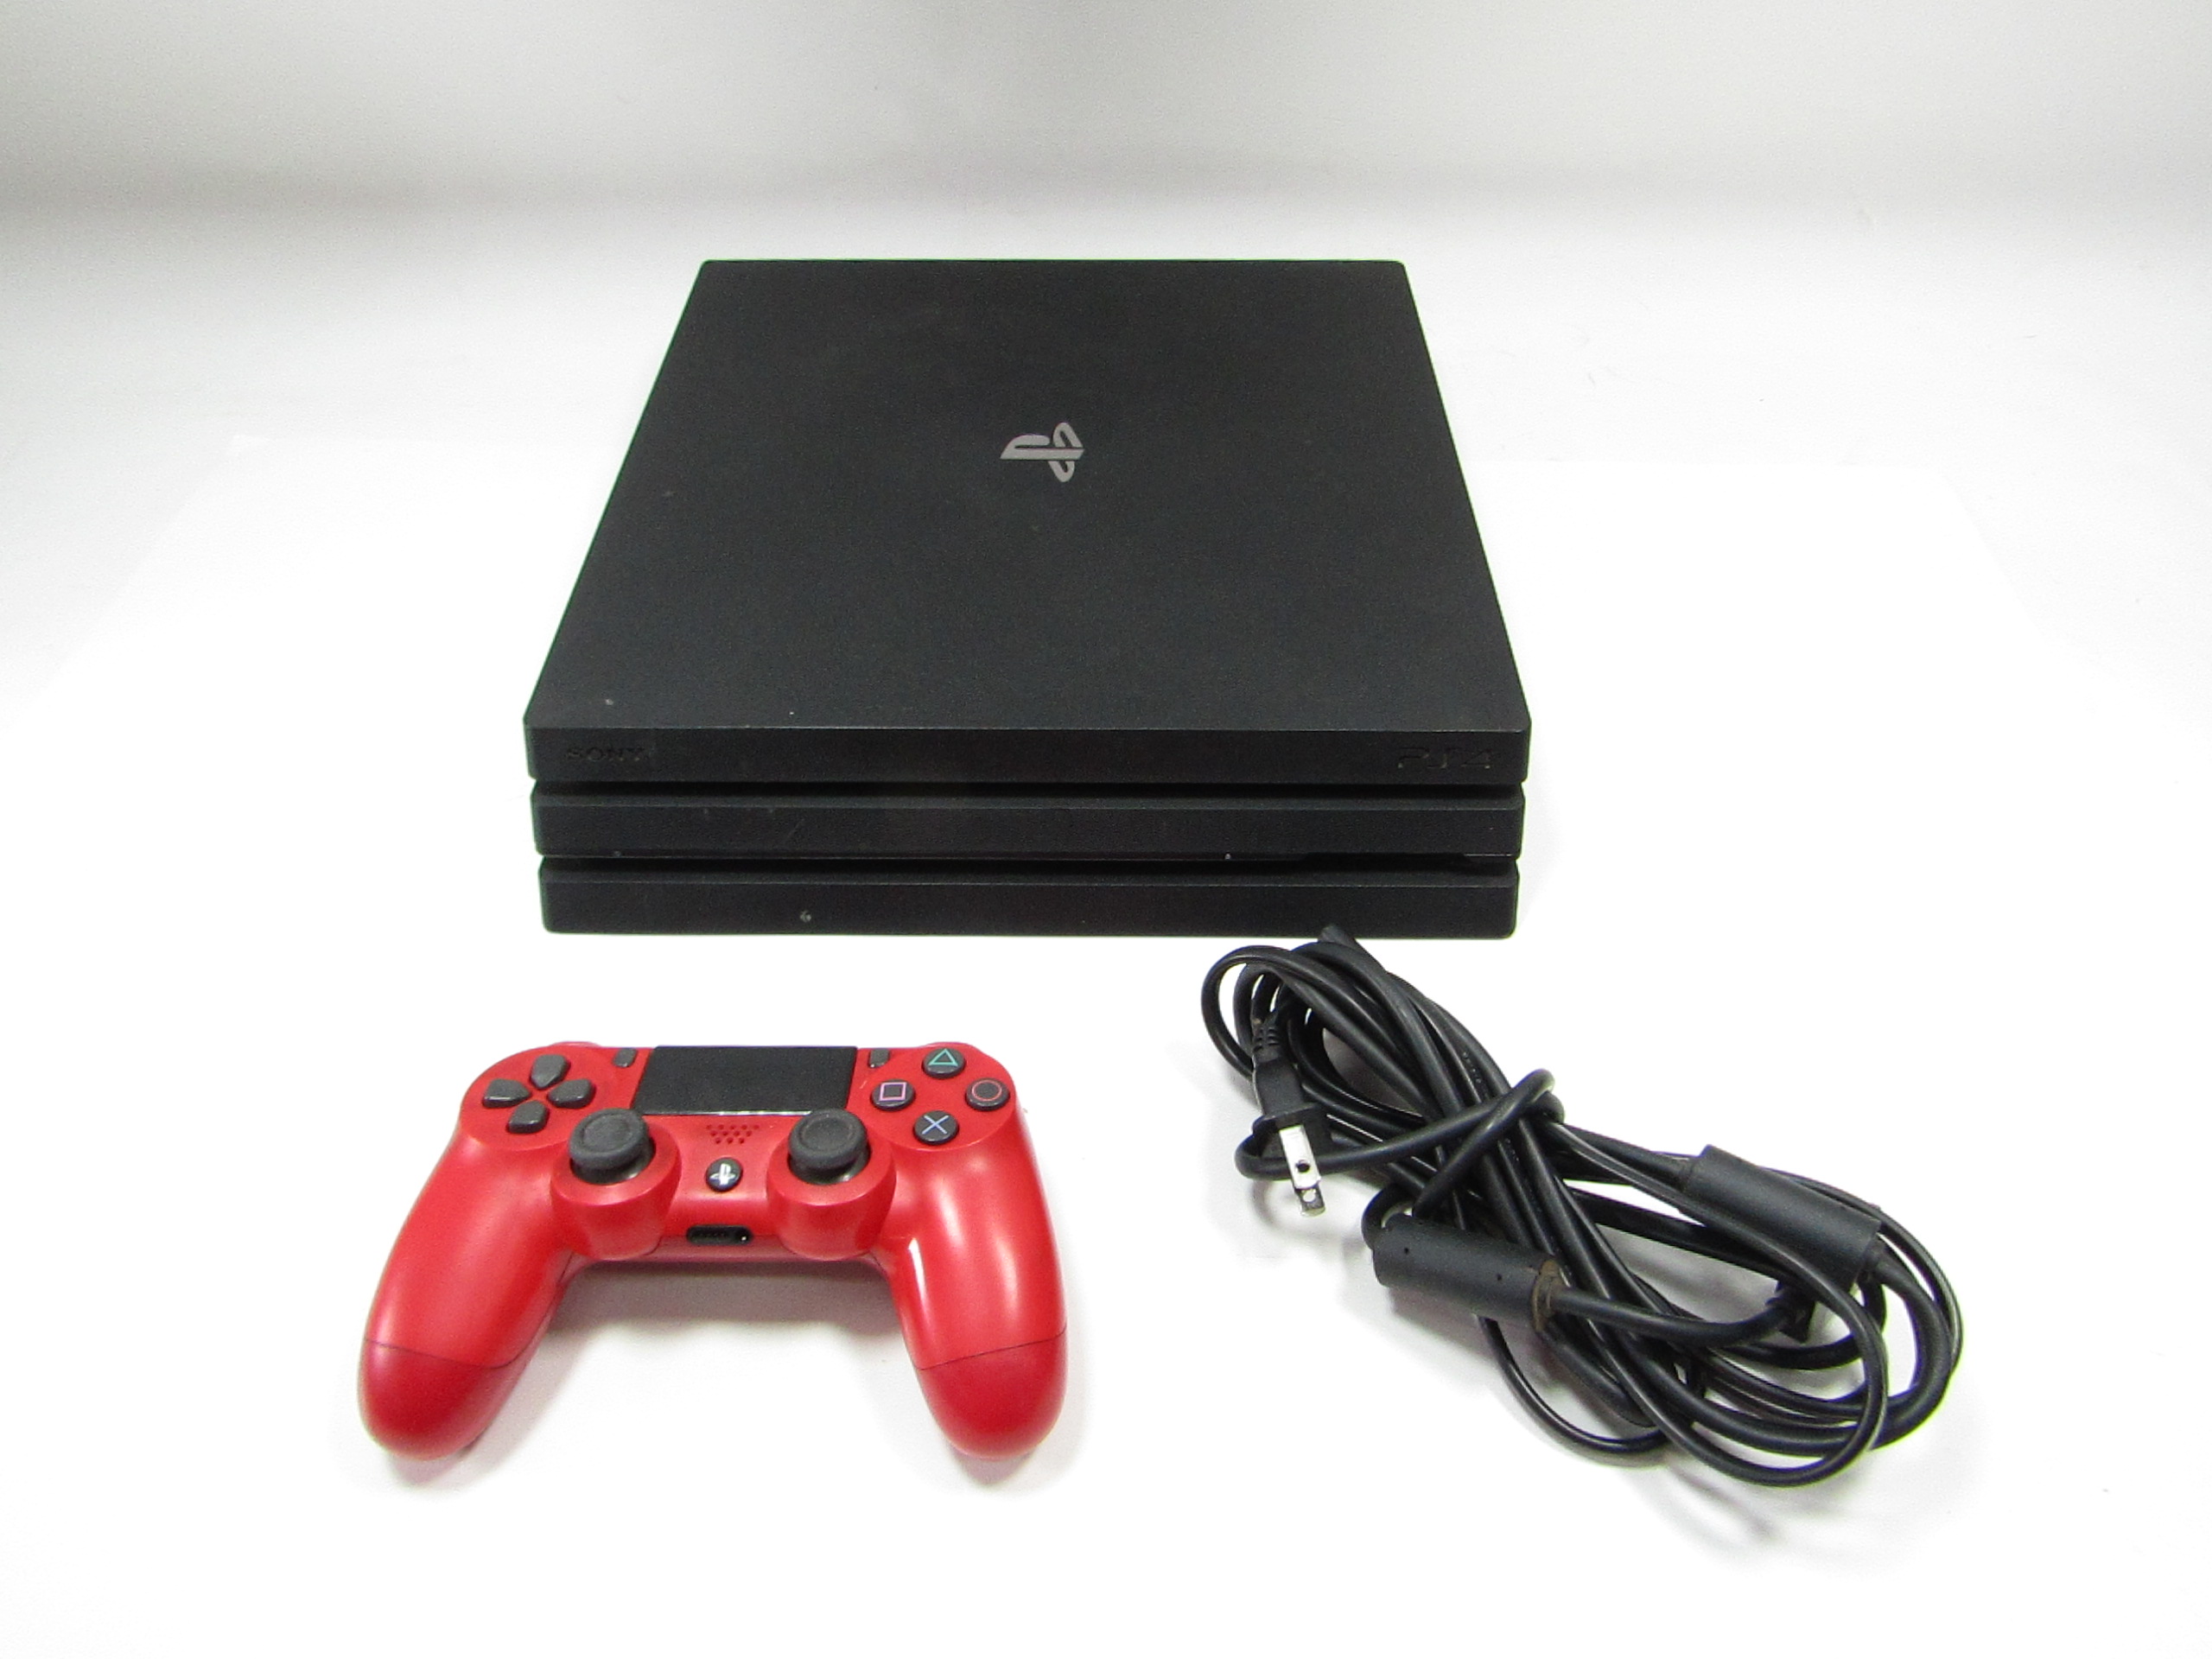 Console Playstation 4 Pro 1TB 7215B na loja HB Games no Paraguai -  ComprasParaguai.com.br